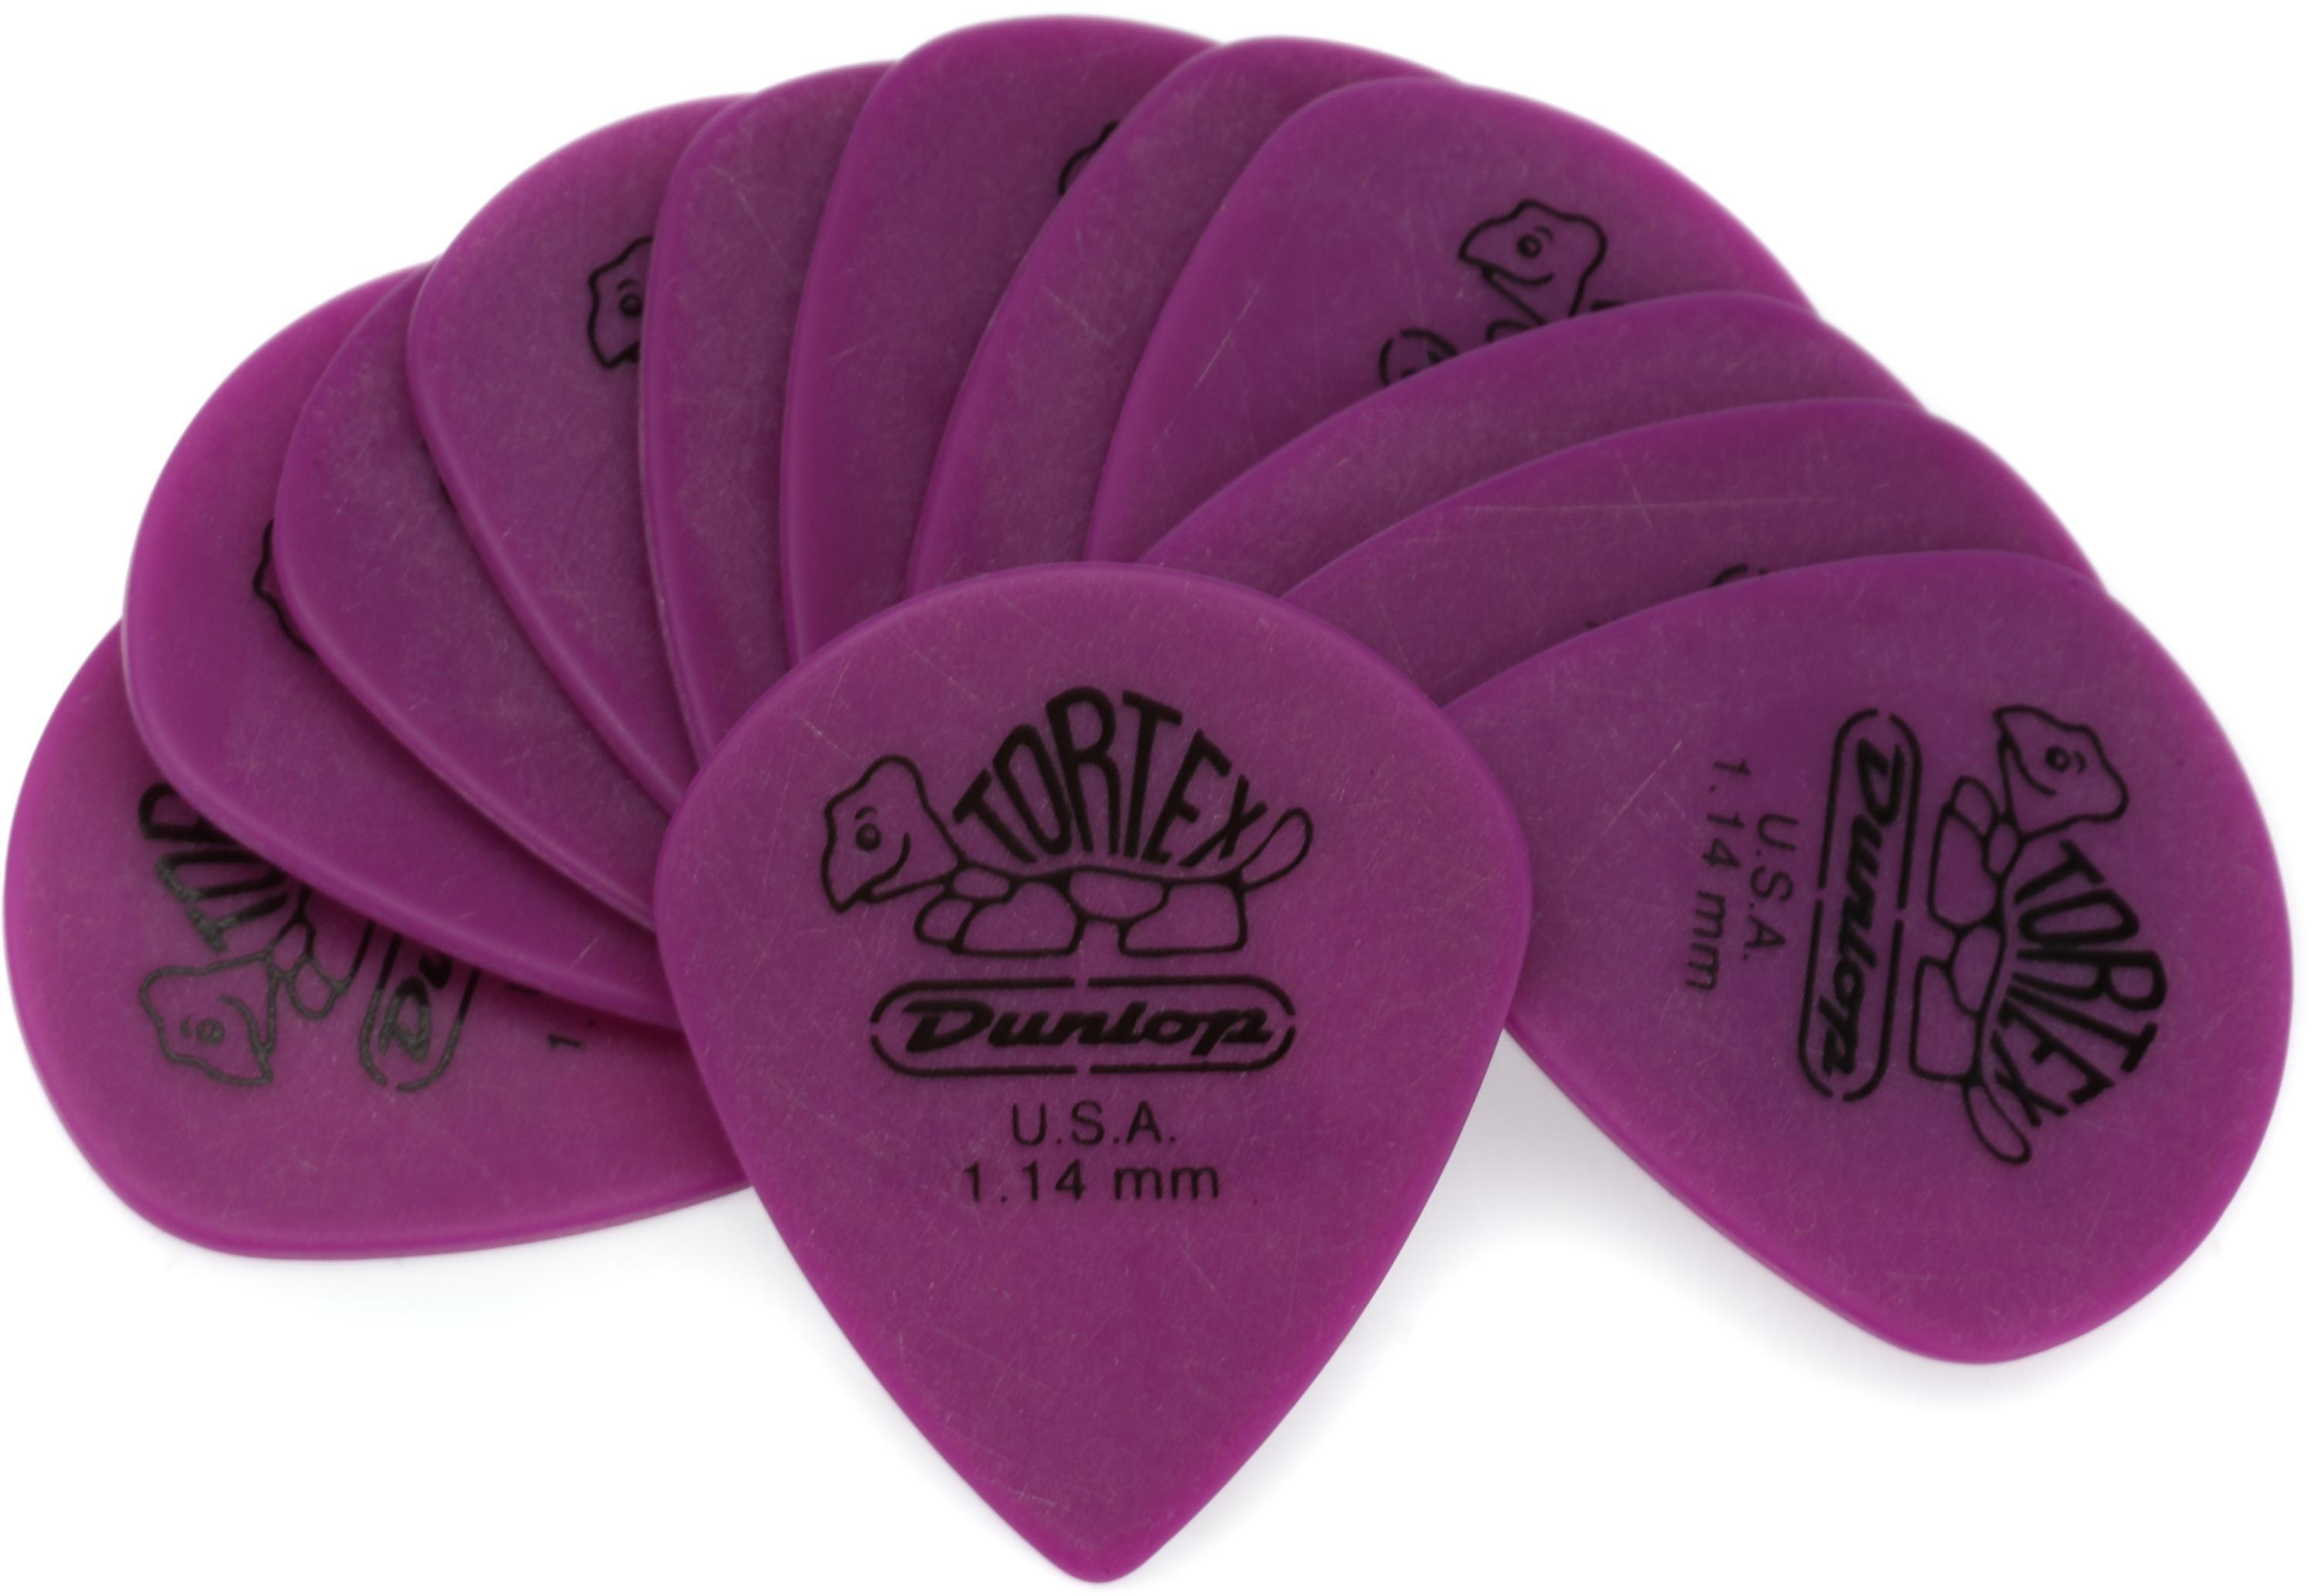 Dunlop Tortex Jazz III XL Guitar Picks - 1.14mm Purple (12-pack)